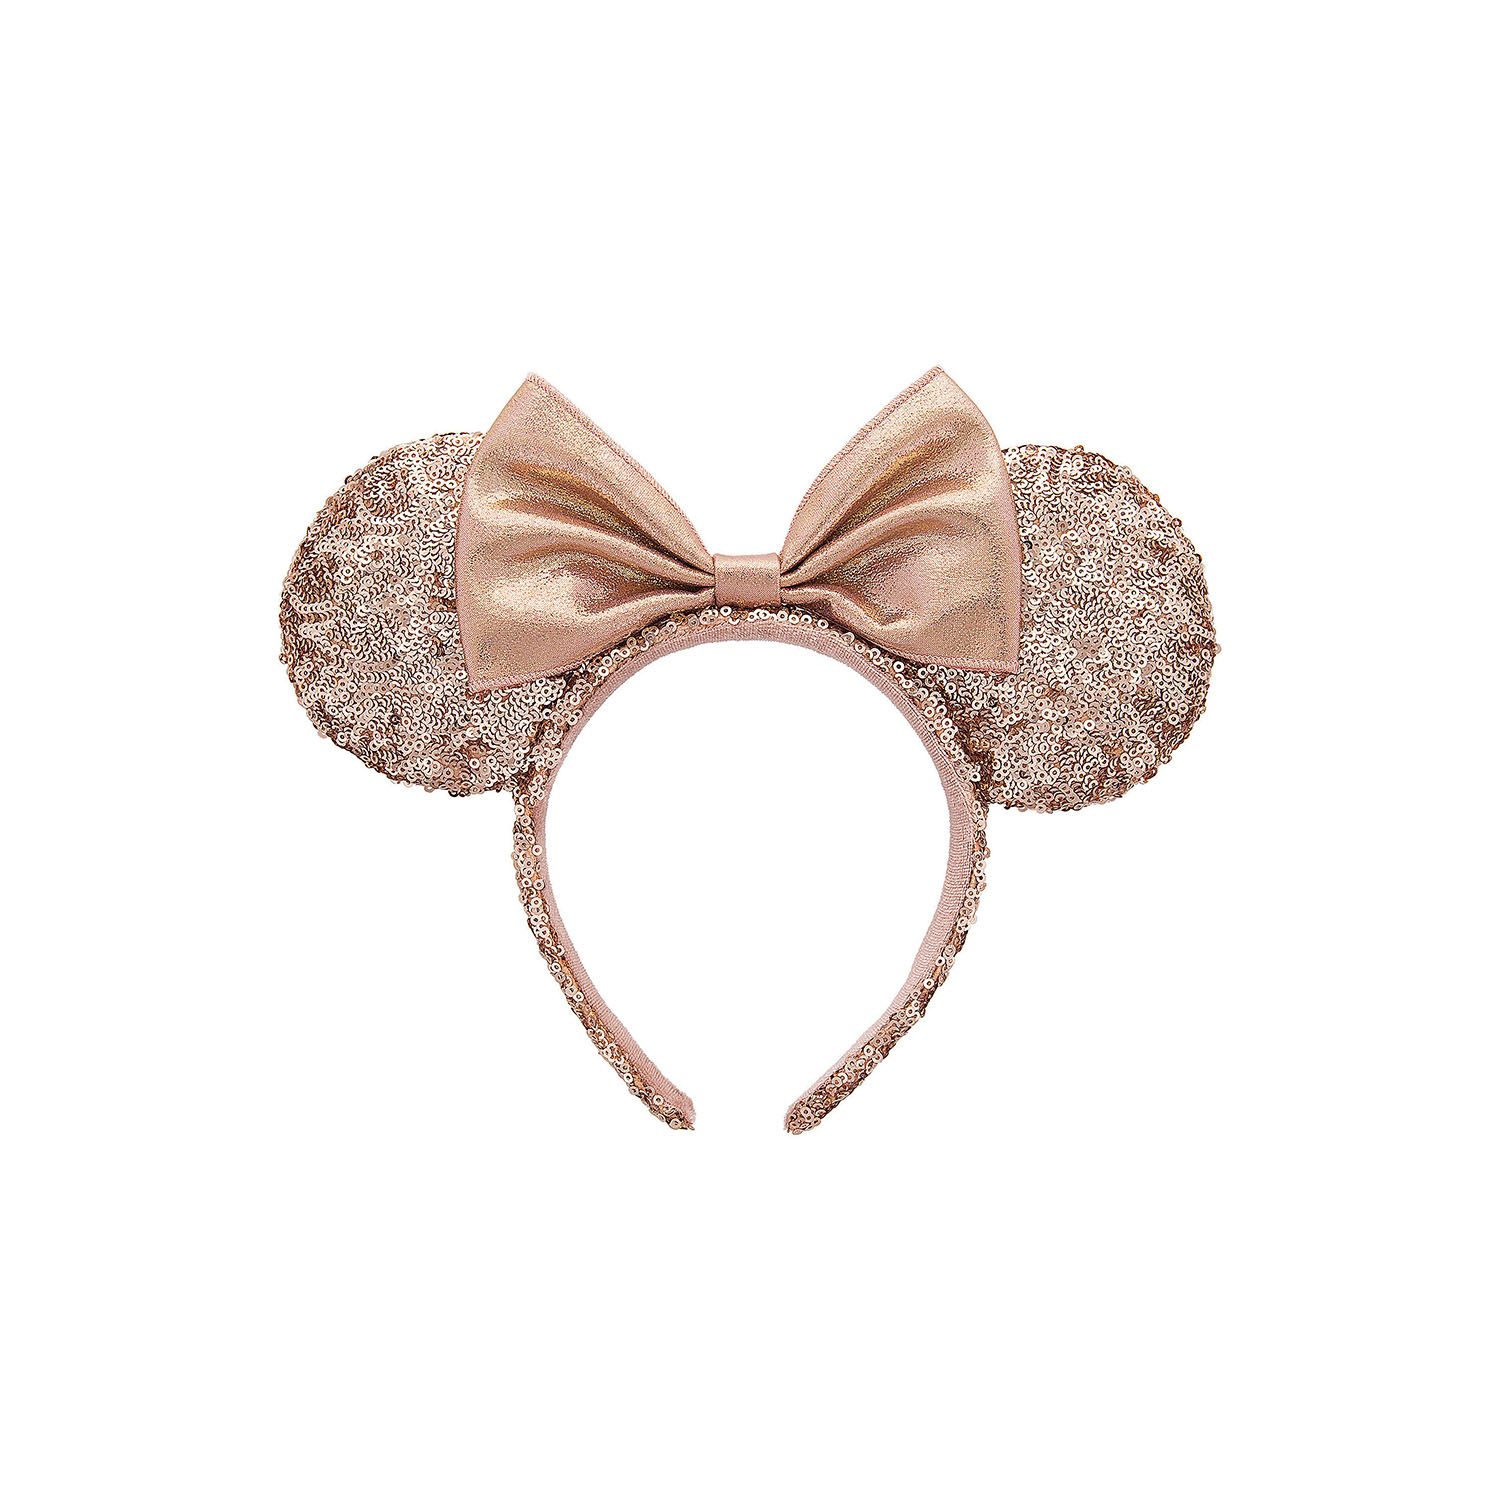 Tá Ears Luiche Minnie Rose Gold ar fáil anois ag an Disney Store